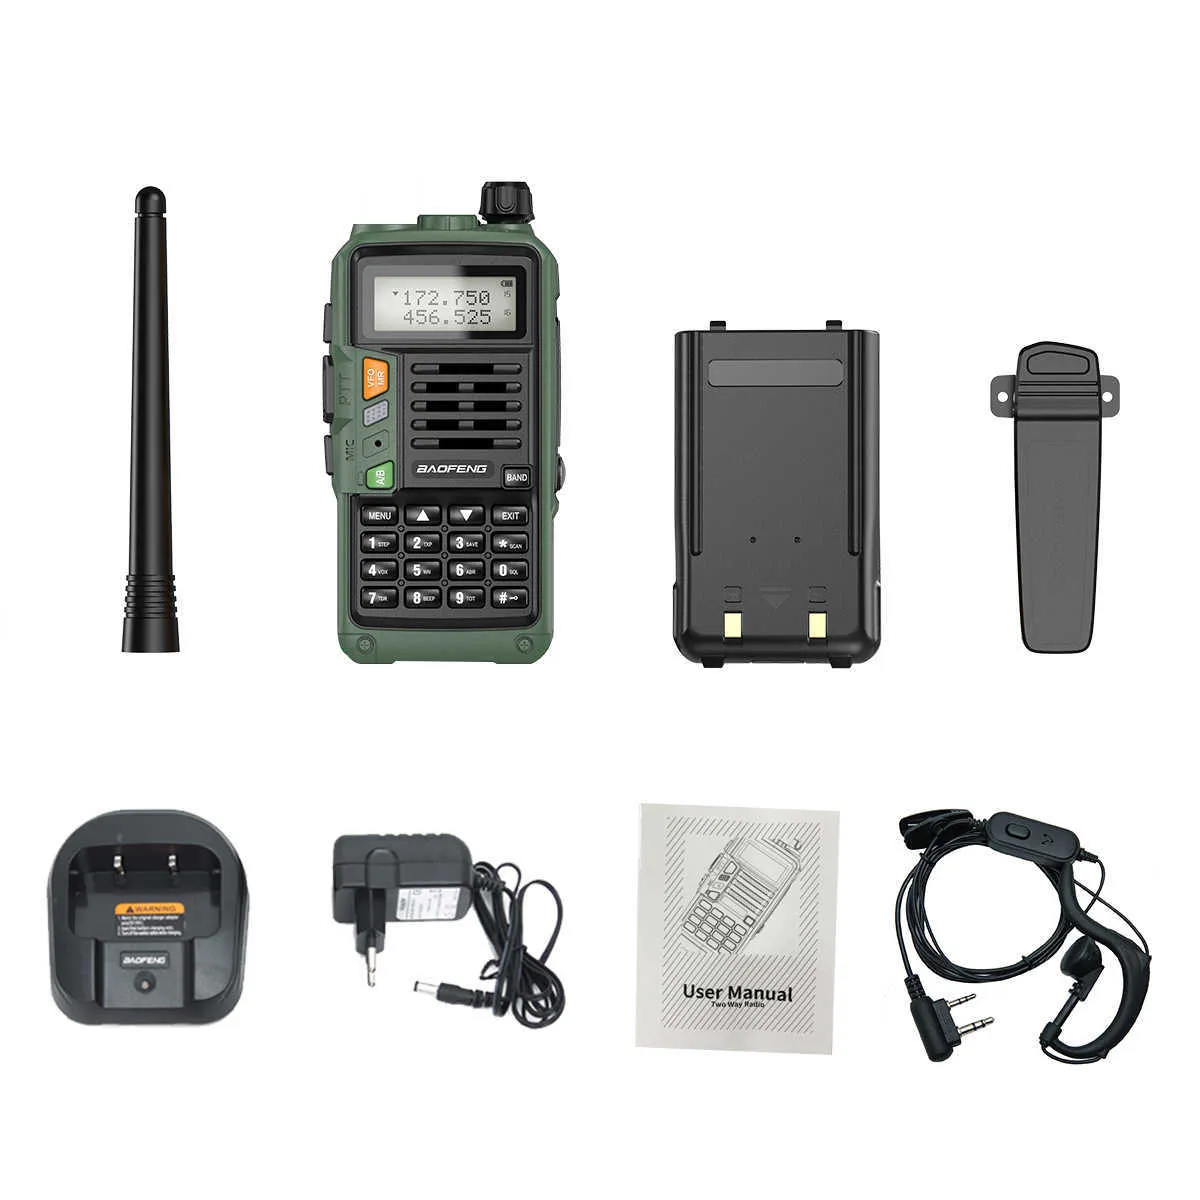 BaoFeng UVS9 Plus puissant talkie-walkie CB émetteur-récepteur Radio 10W 50 KM longue portée Portable pour la chasse forêt mise à niveau 2108175682699